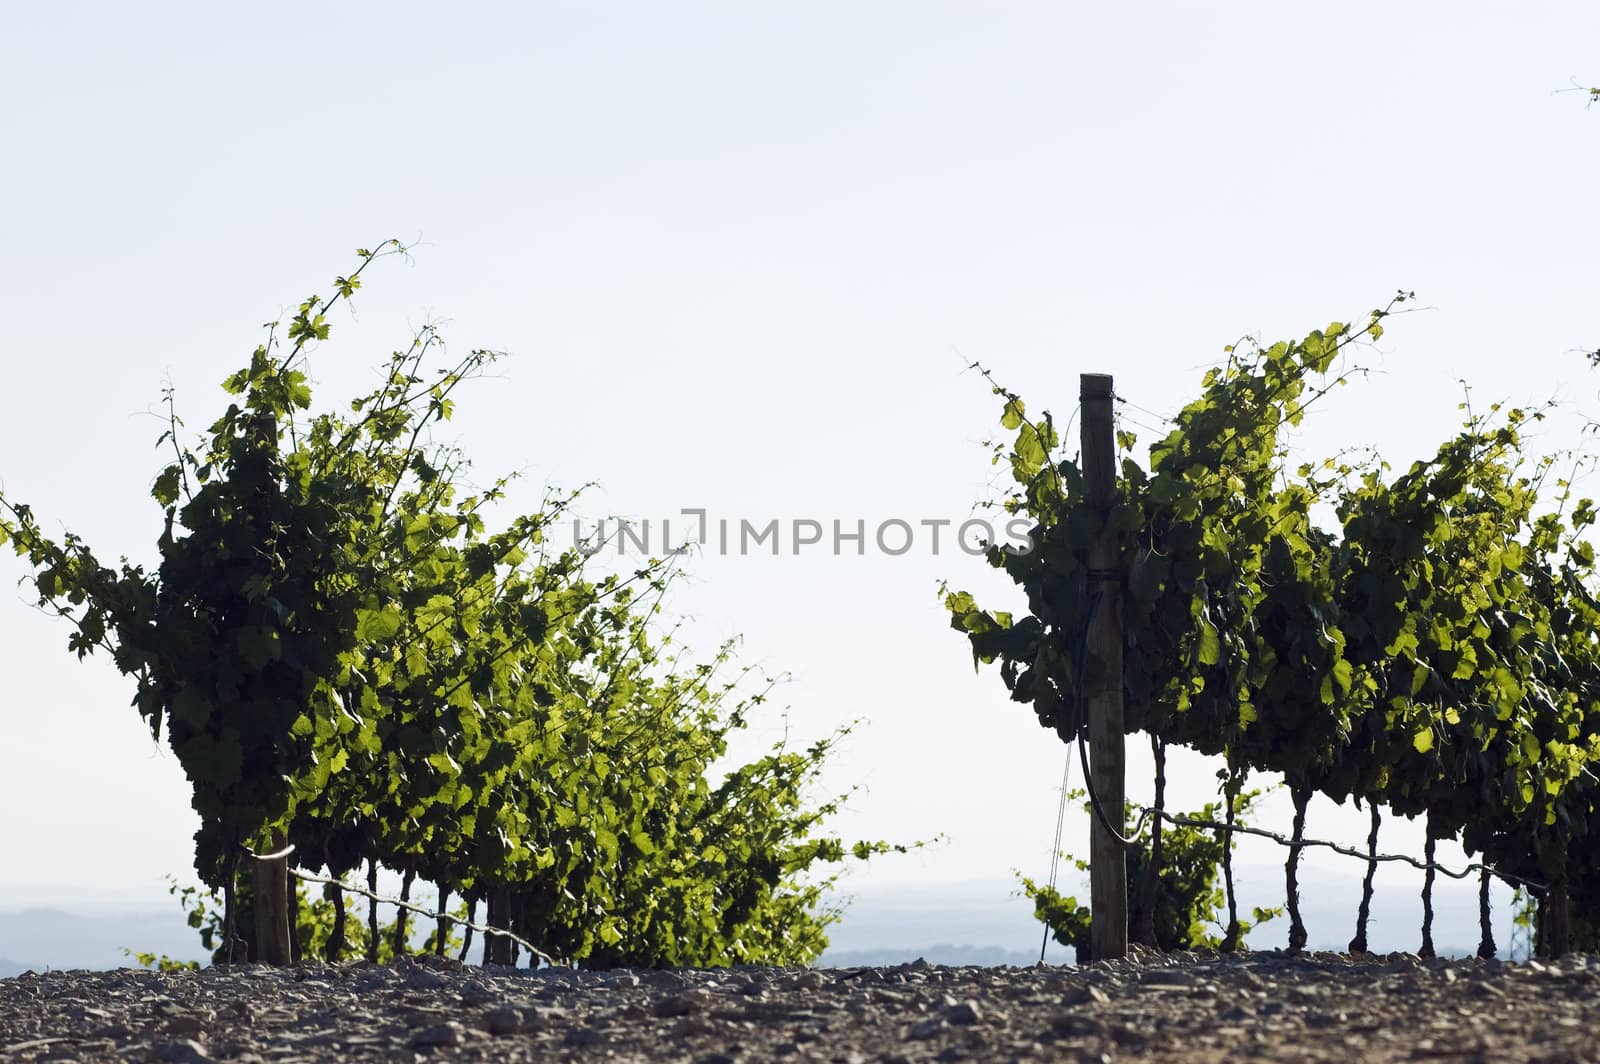 Vineyard rows by mrfotos